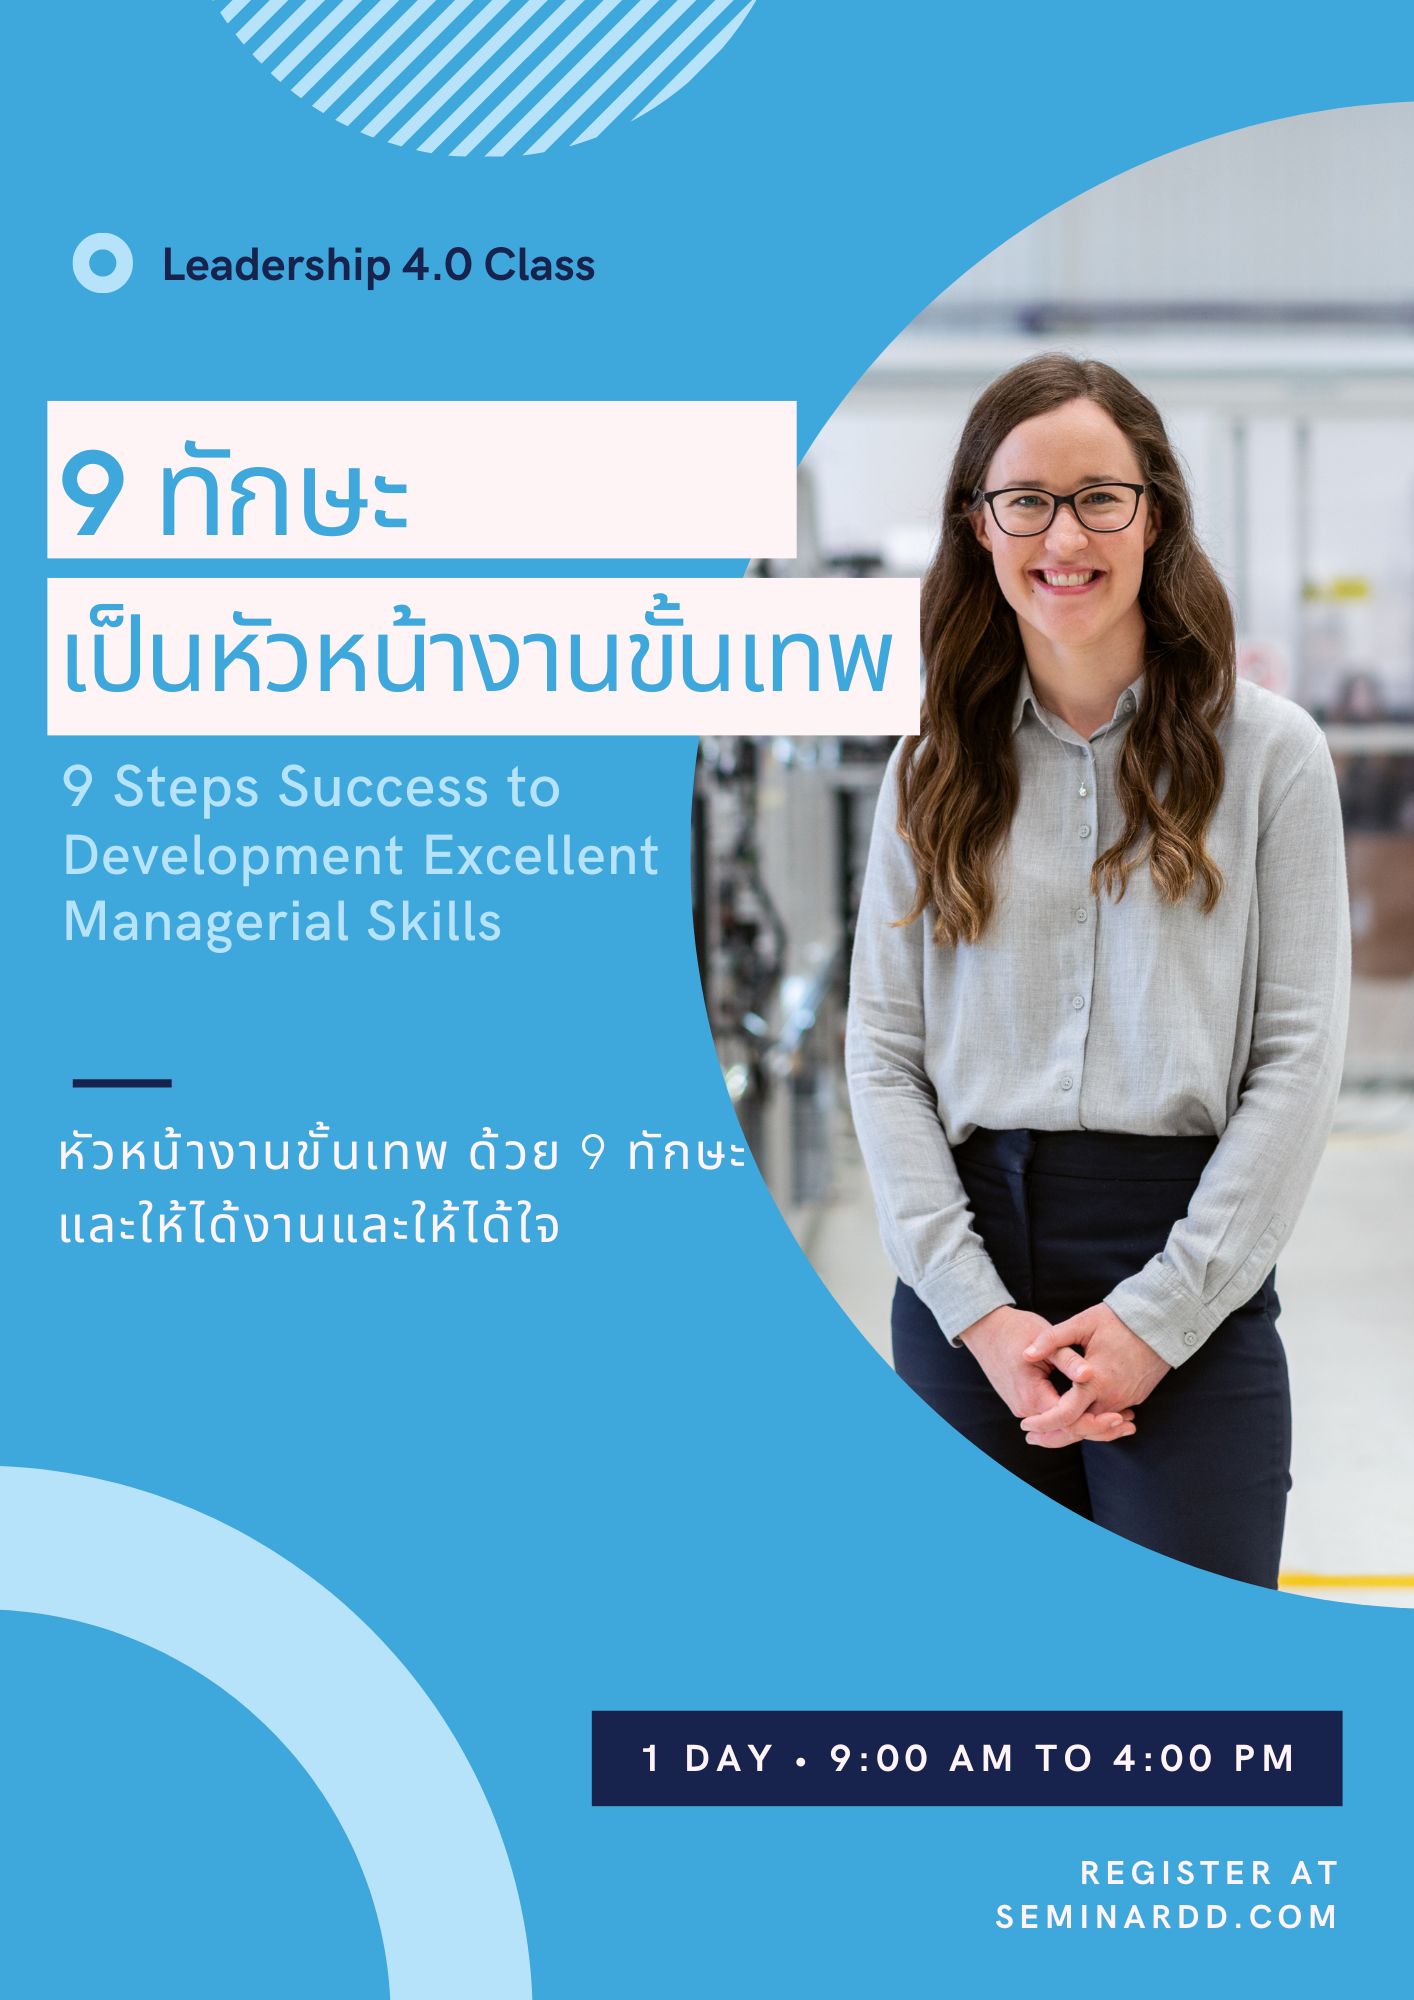 หลักสูตรอบรม หลักสูตร 9 ทักษะความสำเร็จเพื่อยกระดับการเป็นหัวหน้างานขั้นเทพ (9 Steps Success to Development Excellent Managerial Skills) อบรมในรูปแบบ Classroom